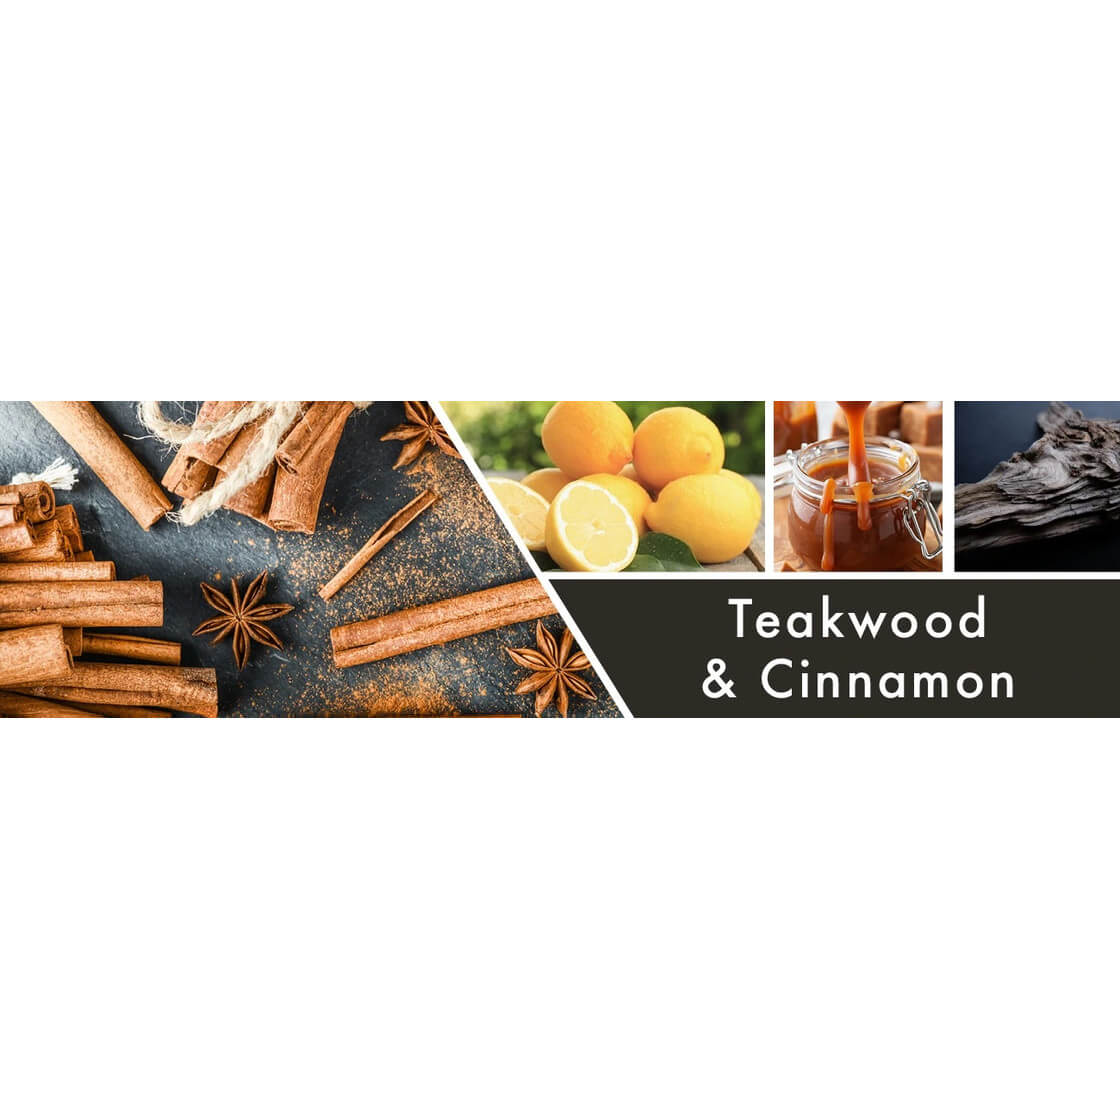 Teakwood & Cinnamon 453g (Tumbler)